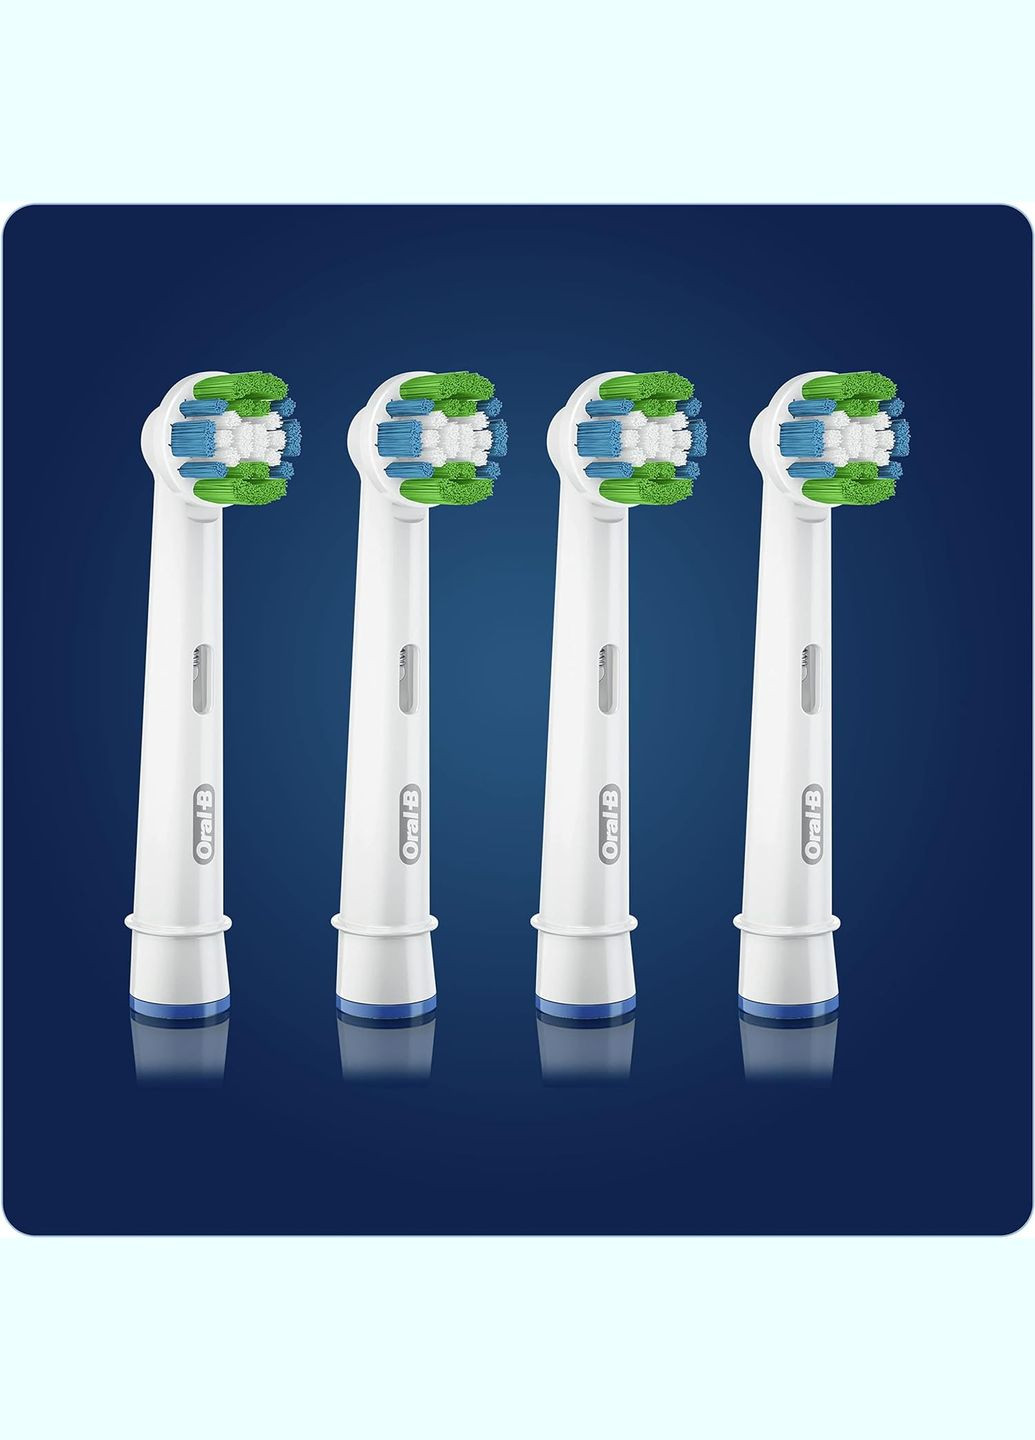 Насадки для электрических зубных щеток OralB Precision Clean Cleanmaximiser (10 шт) Oral-B (280265729)